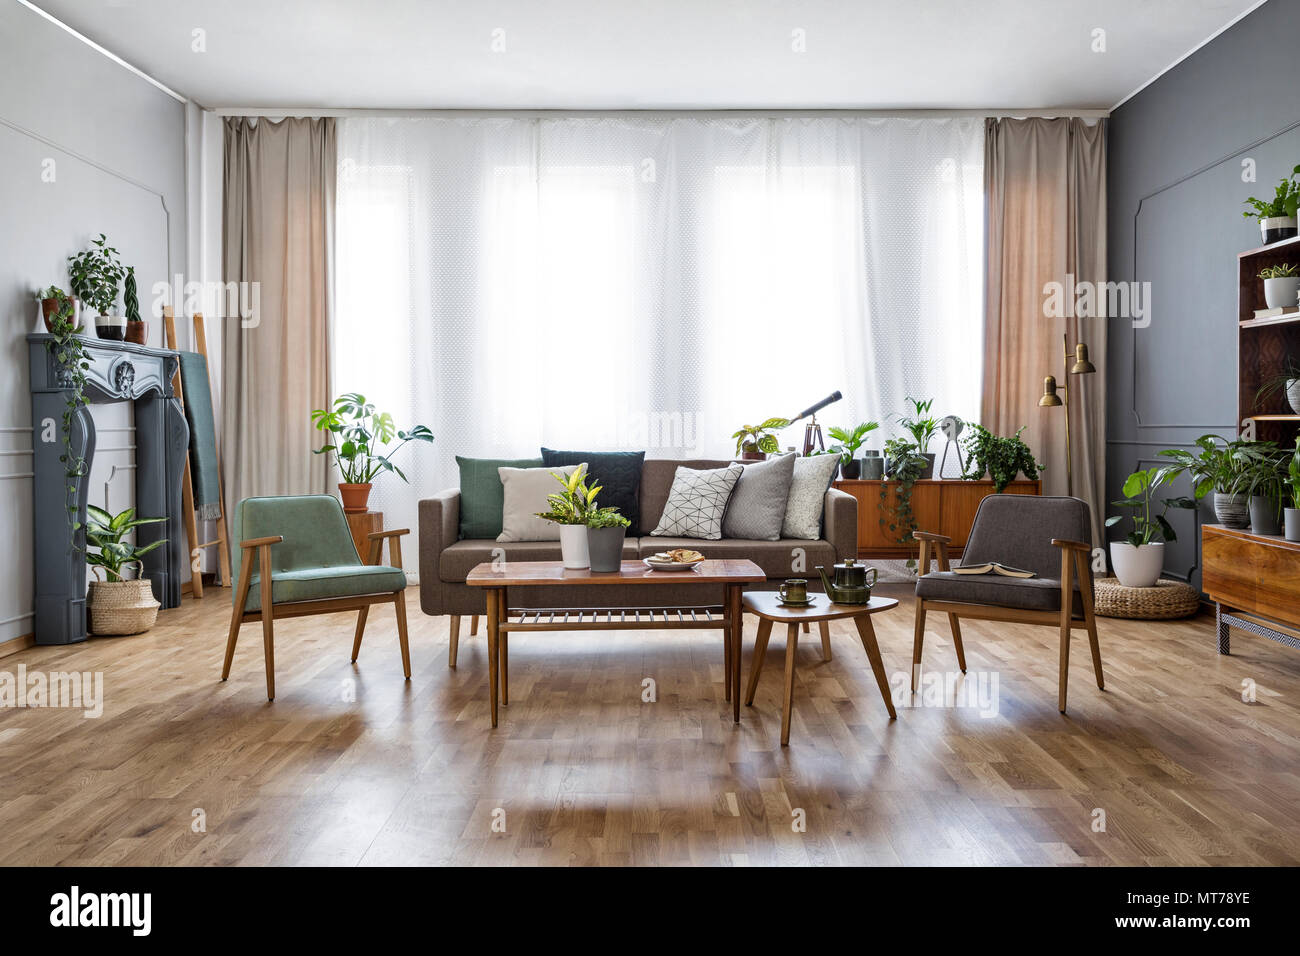 Holztisch mit Blumen zwischen Sessel im geräumigen Wohnzimmer mit Sofa. Real Photo Stockfoto